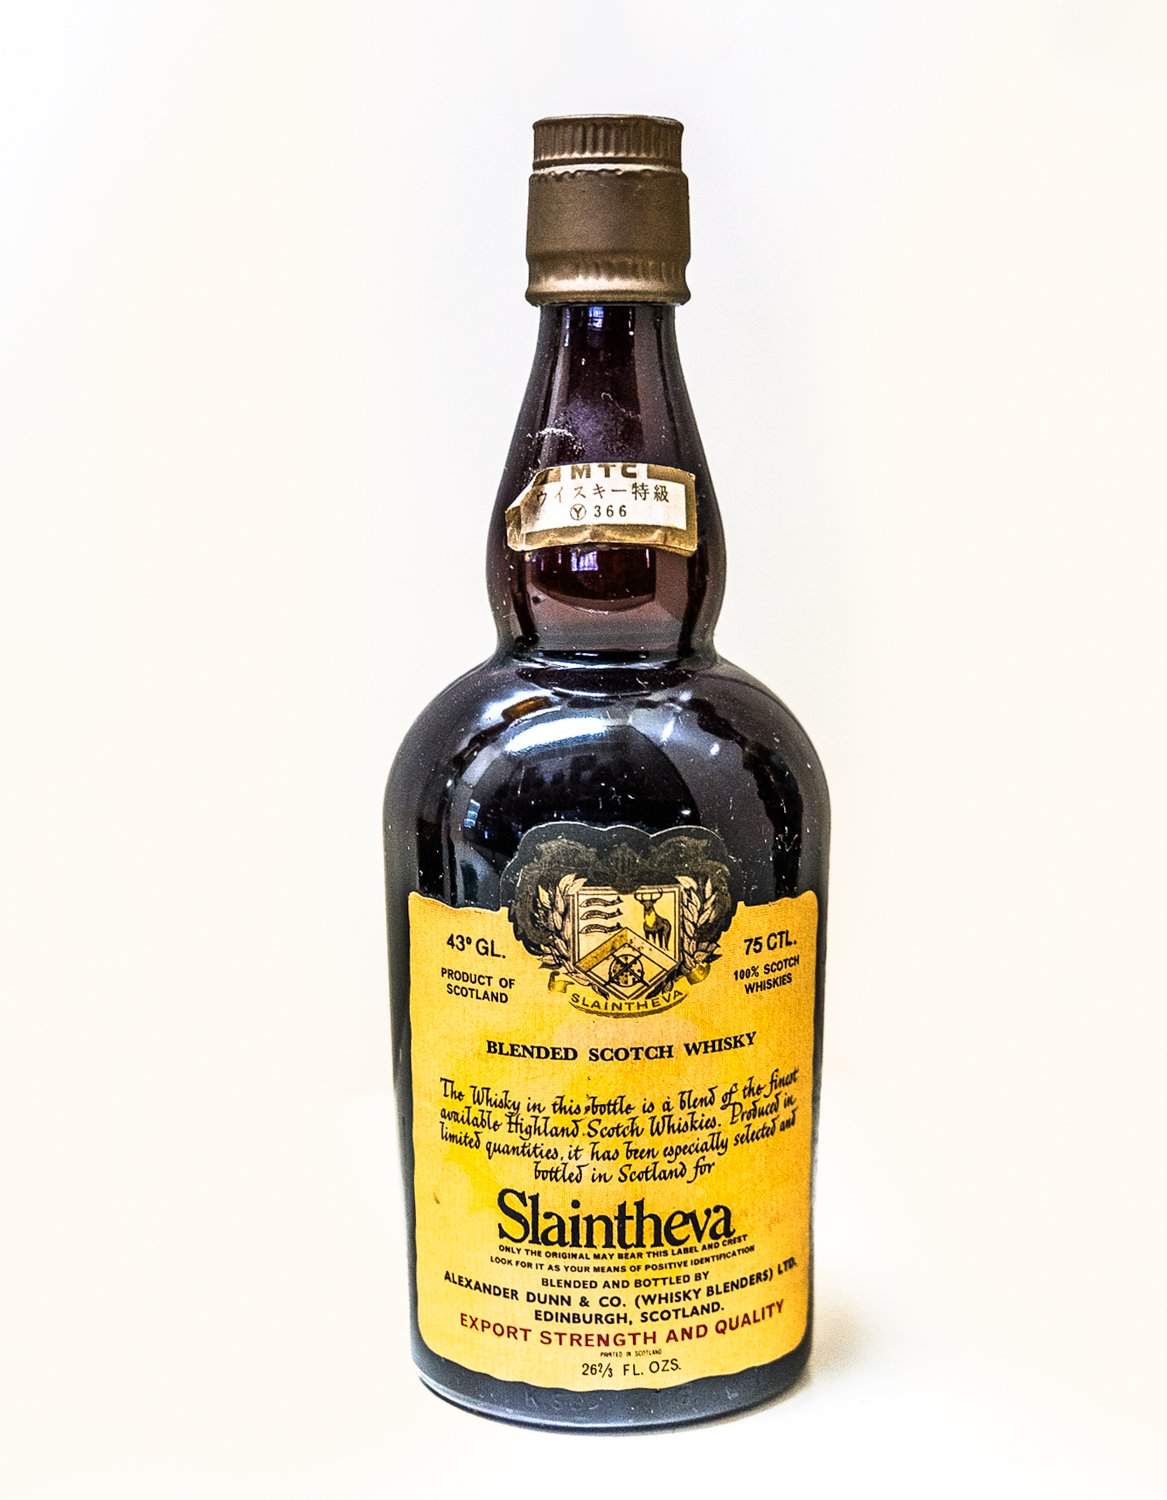 Slaintheva Blended Scotch Whisky